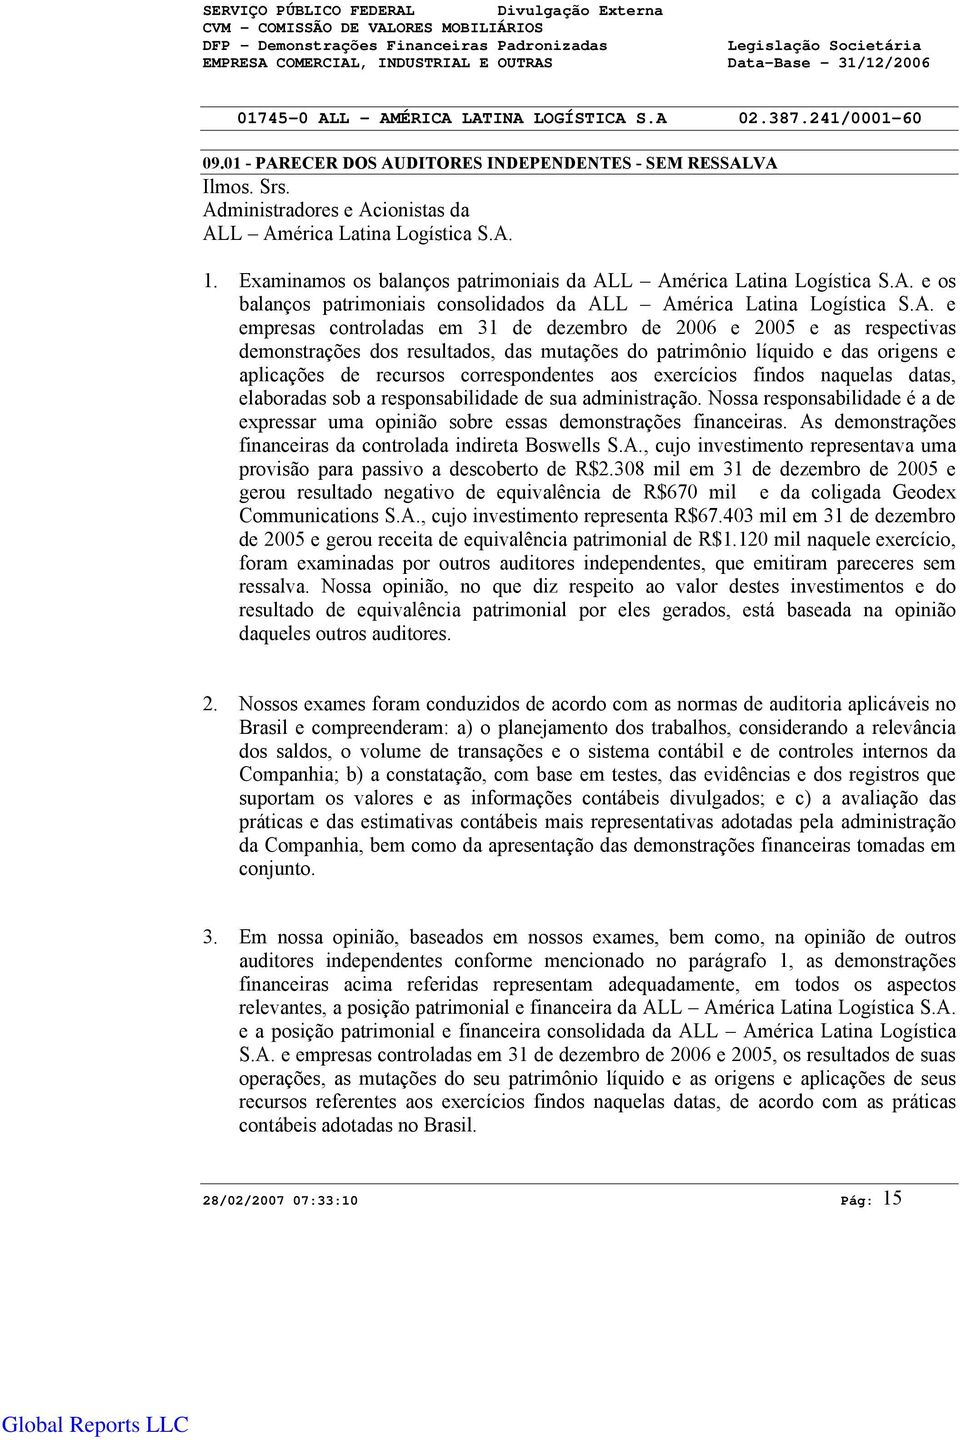 A. e os balanços patrimoniais consolidados da ALL América Latina Logística S.A. e empresas controladas em 31 de dezembro de 26 e 25 e as respectivas demonstrações dos resultados, das mutações do